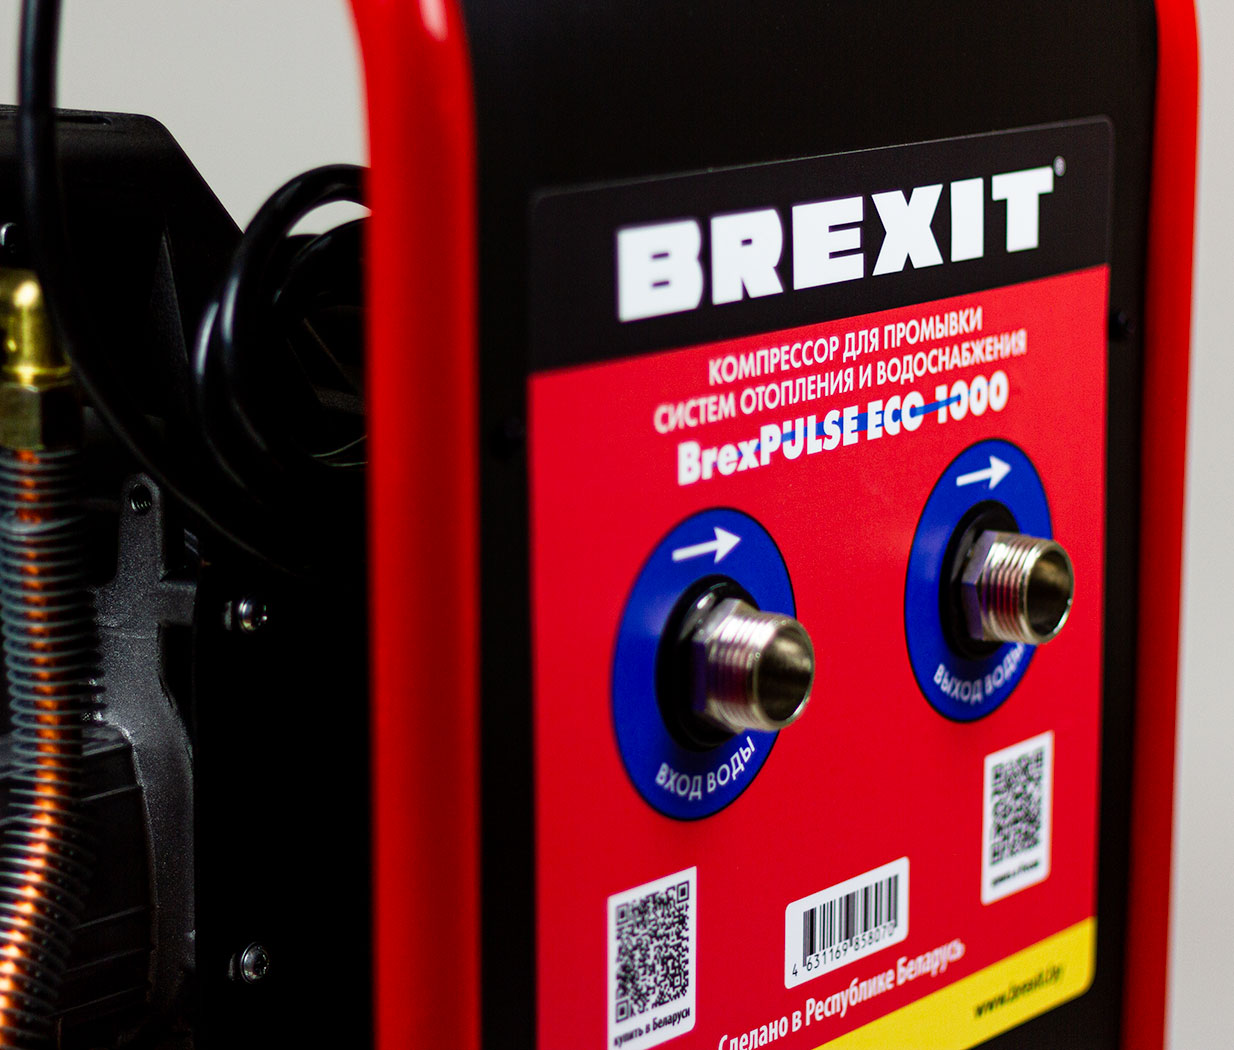  BrexPULSE ECO 1000 Промывочный компрессор от компании Tectron. Фото �7